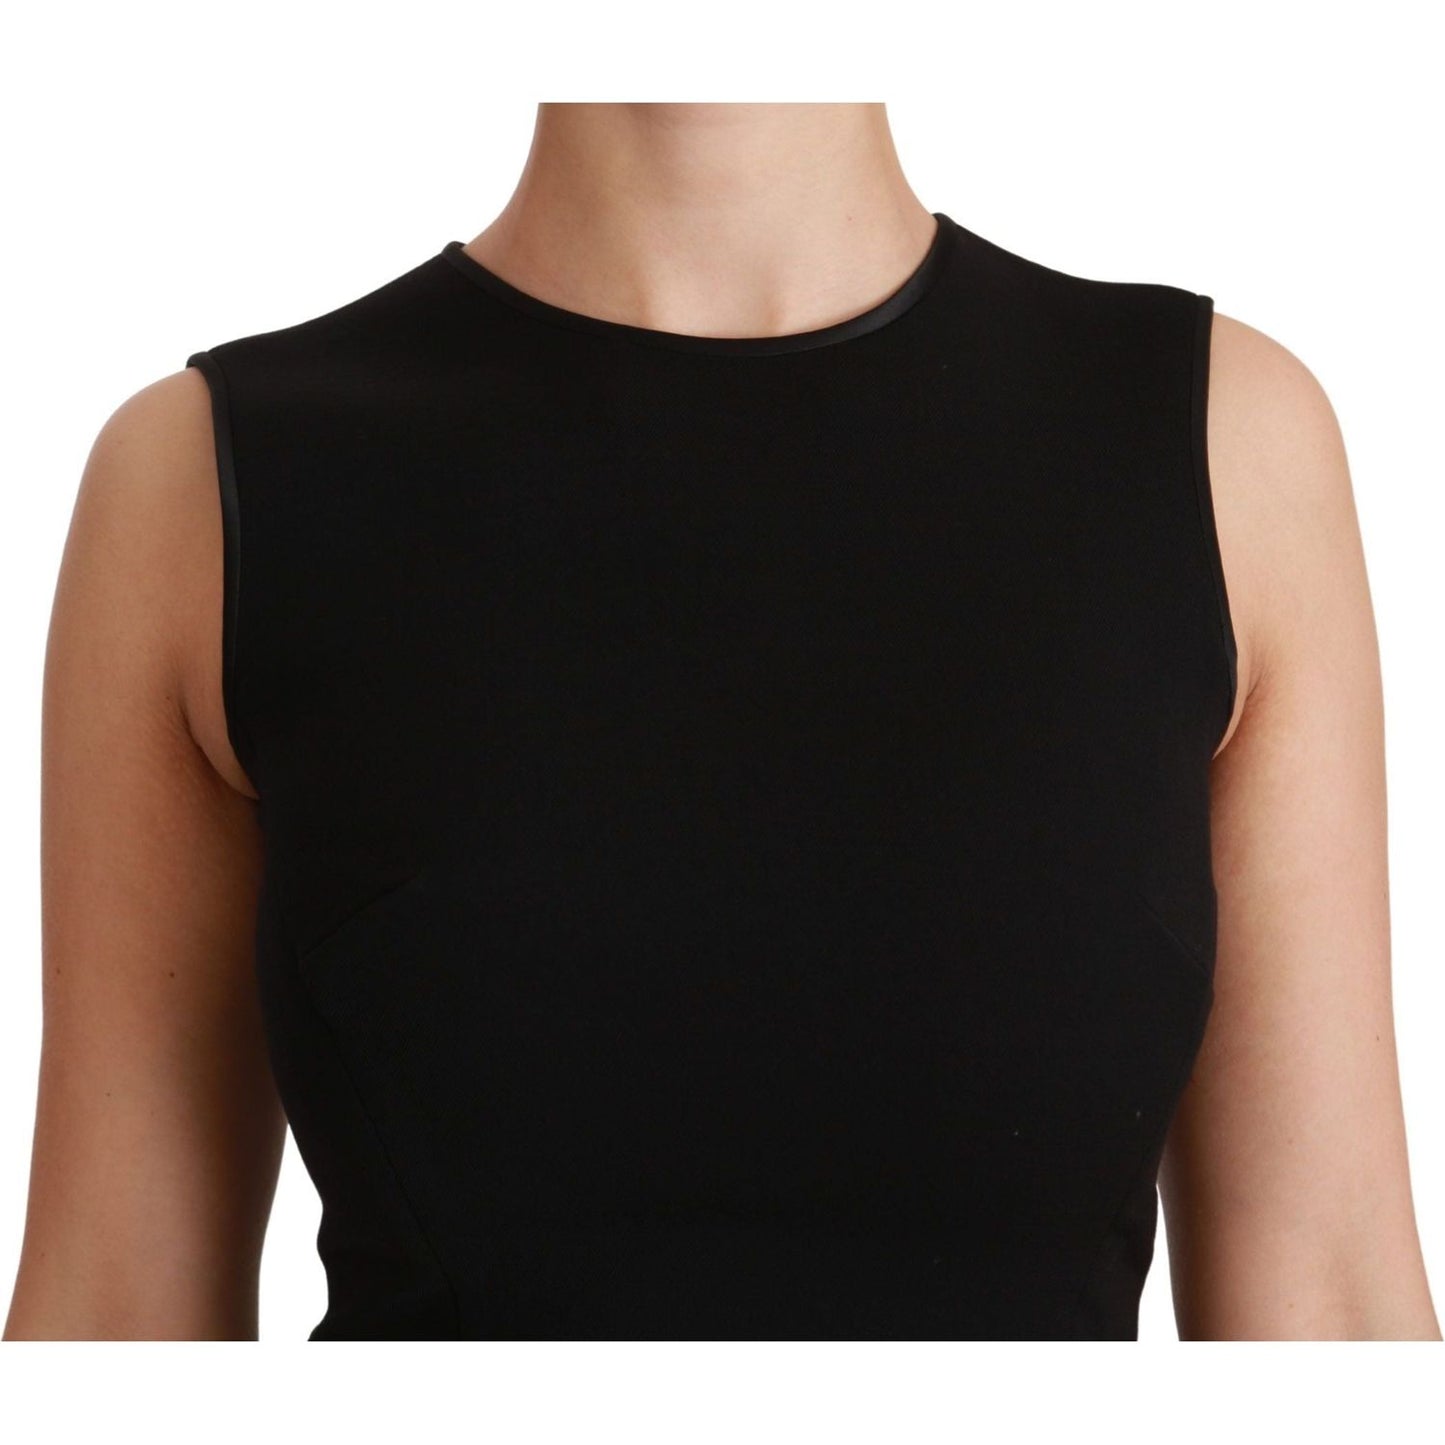 Dolce & Gabbana Elegant Black Fit Flare Wool Blend Dress WOMAN DRESSES black-fit-flare-wool-stretch-sheath-dress IMG_6968-scaled-9e6e4497-f70.jpg